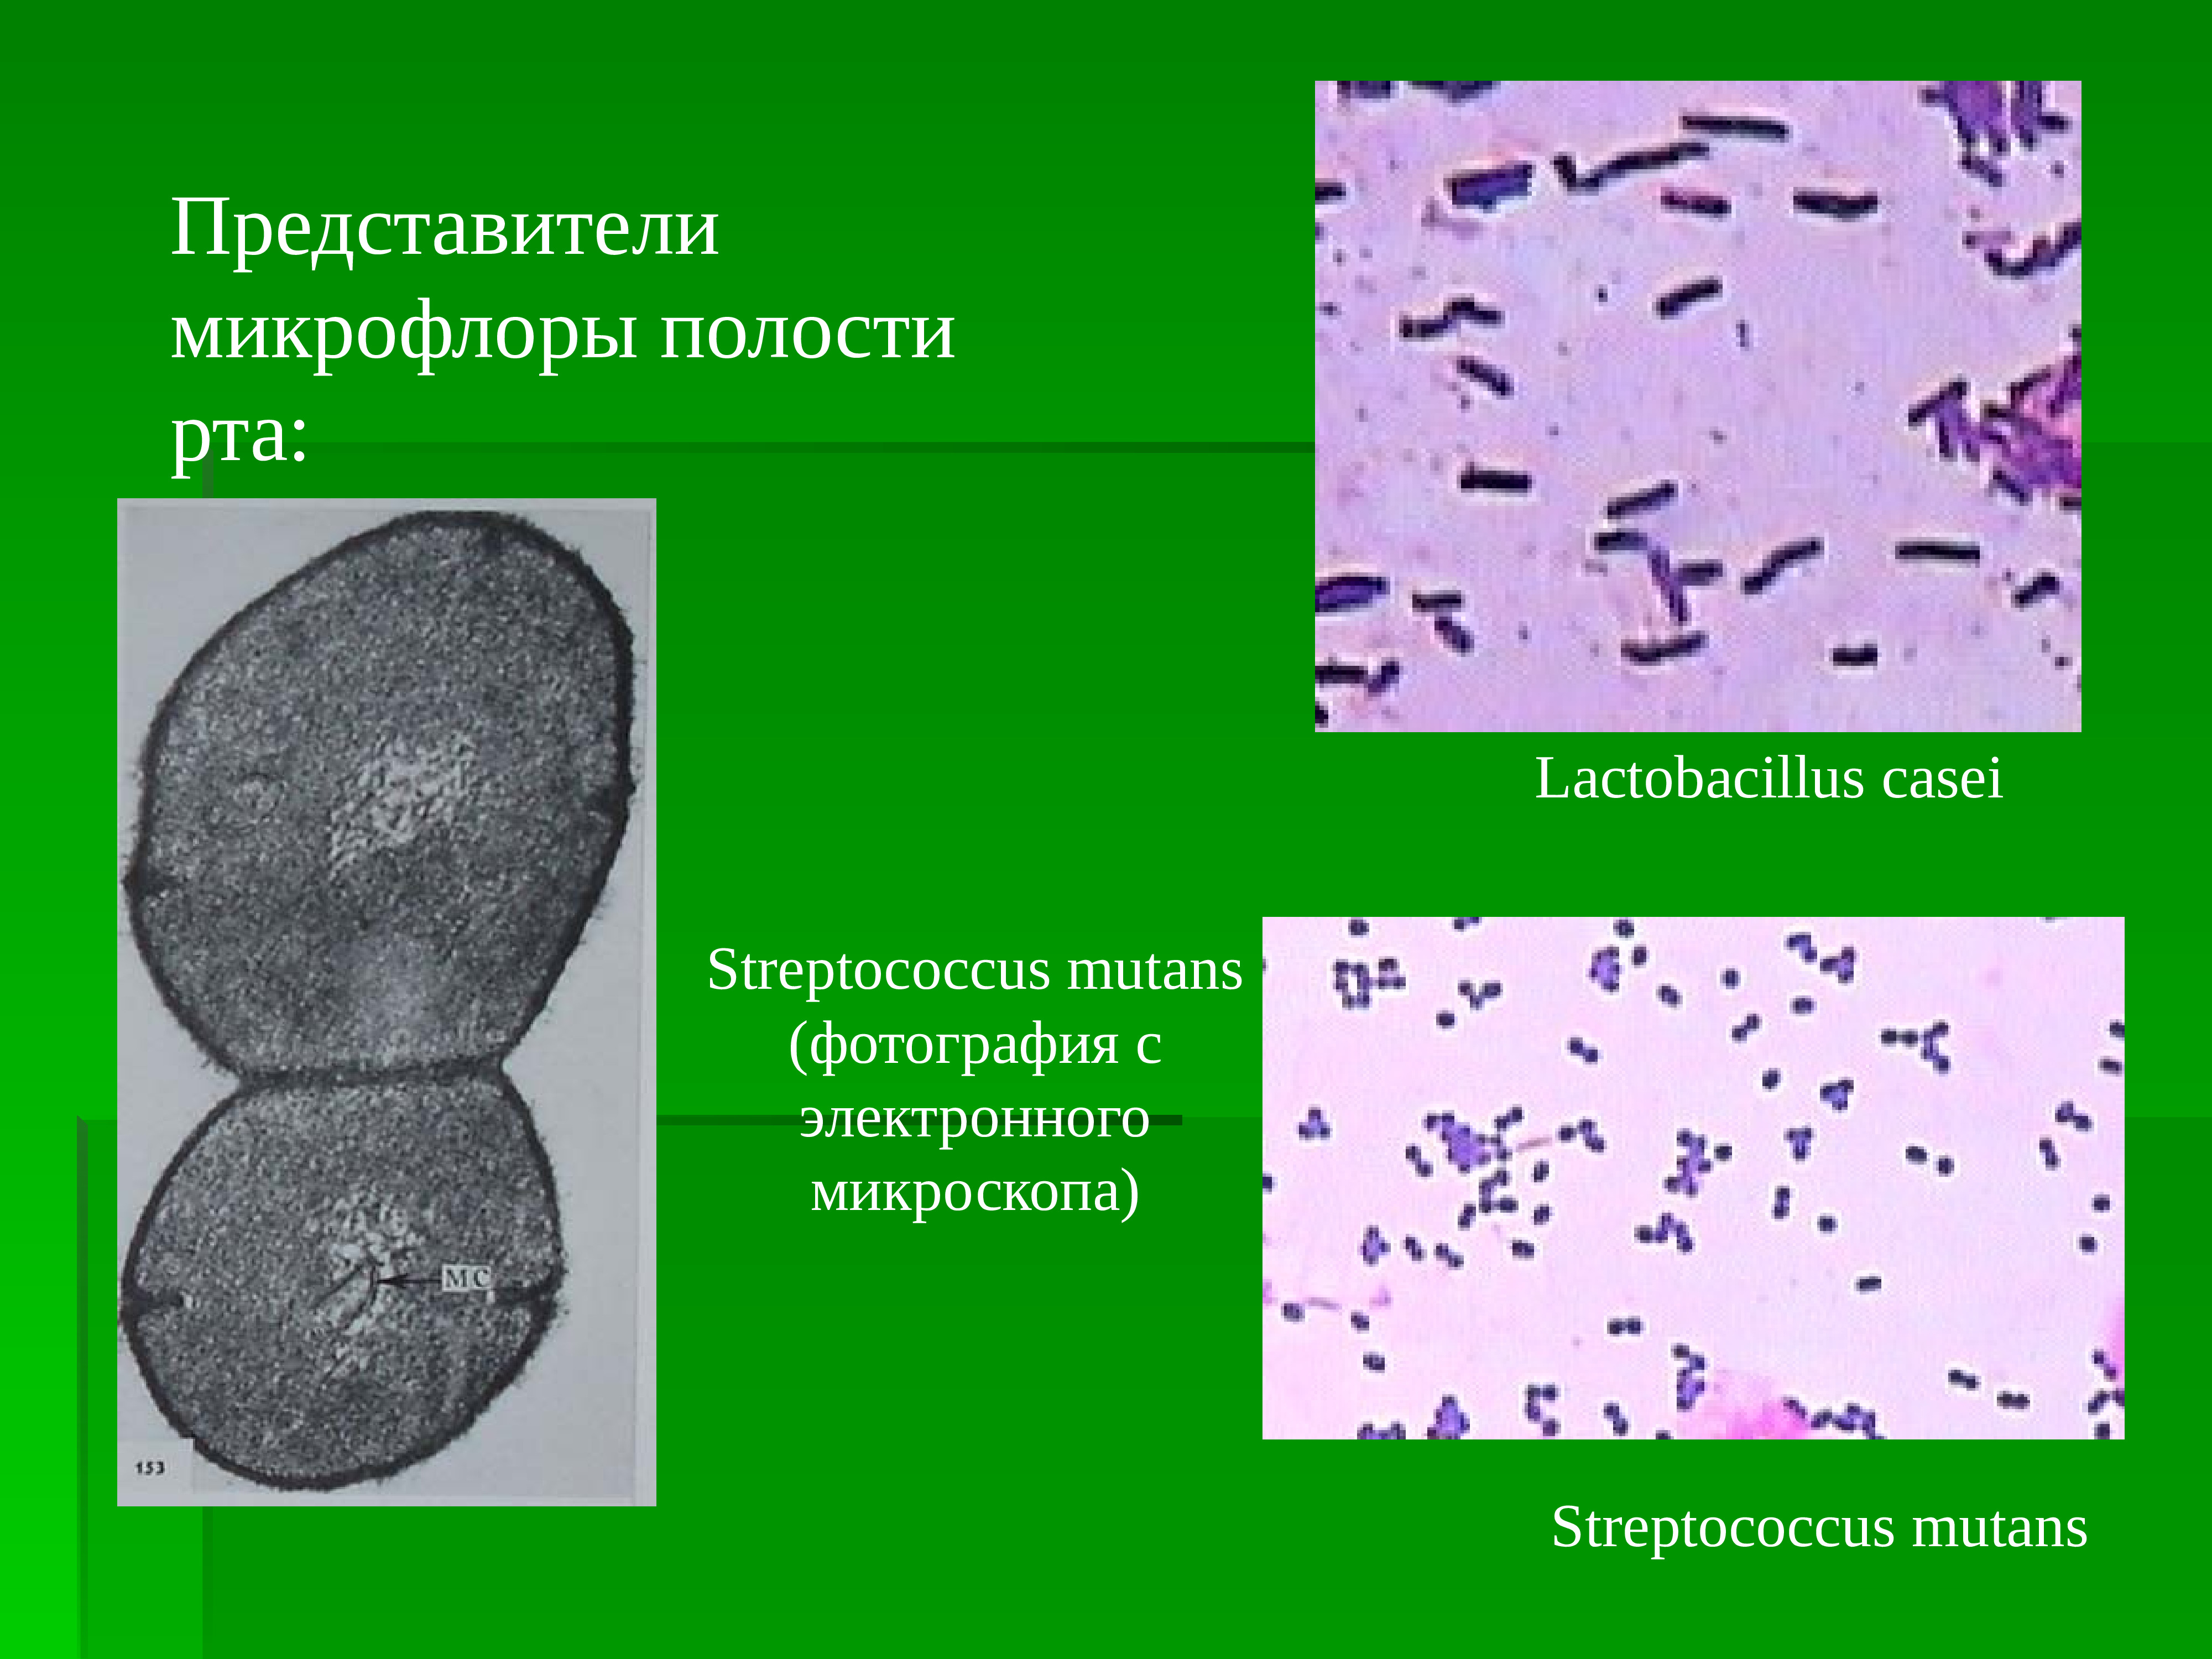 Микроорганизмы полости рта. Представители микрофлоры ротовой полости. Микрофлора полости рта микробиология. Микрофлора зубного налета микробиология.